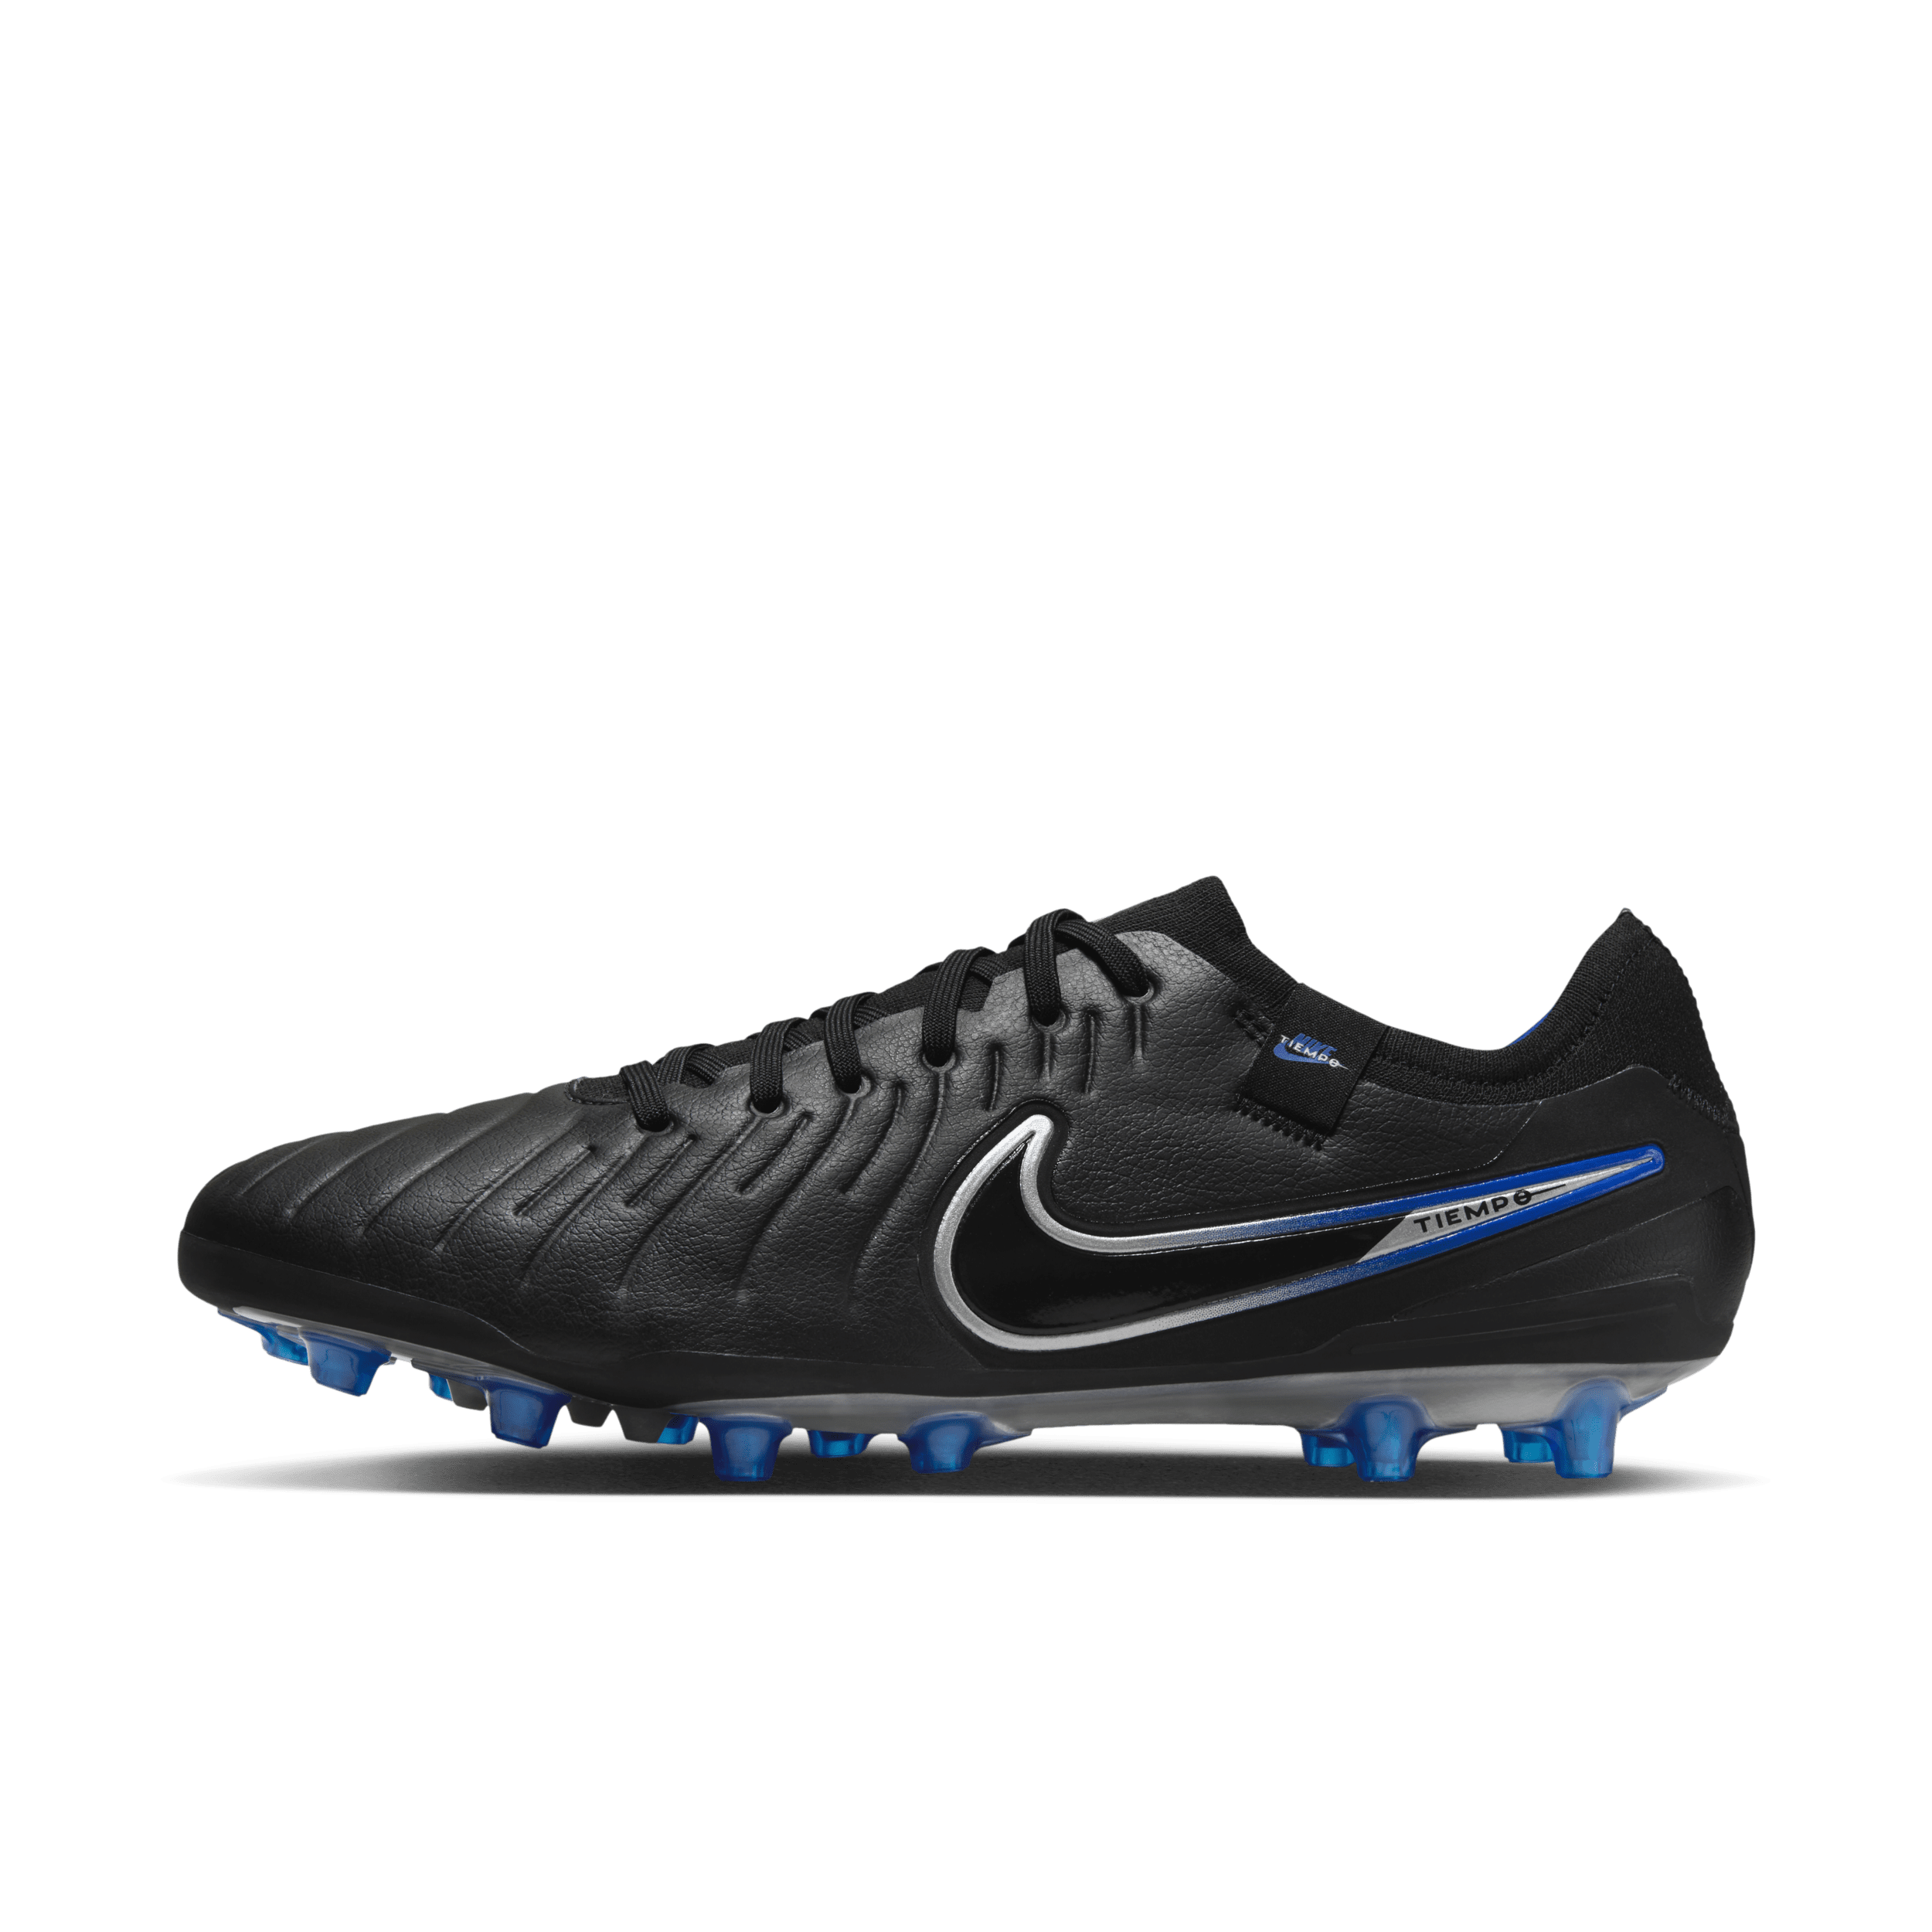 Nike Tiempo Legend 10 Pro low top voetbalschoenen (kunstgras) - Zwart